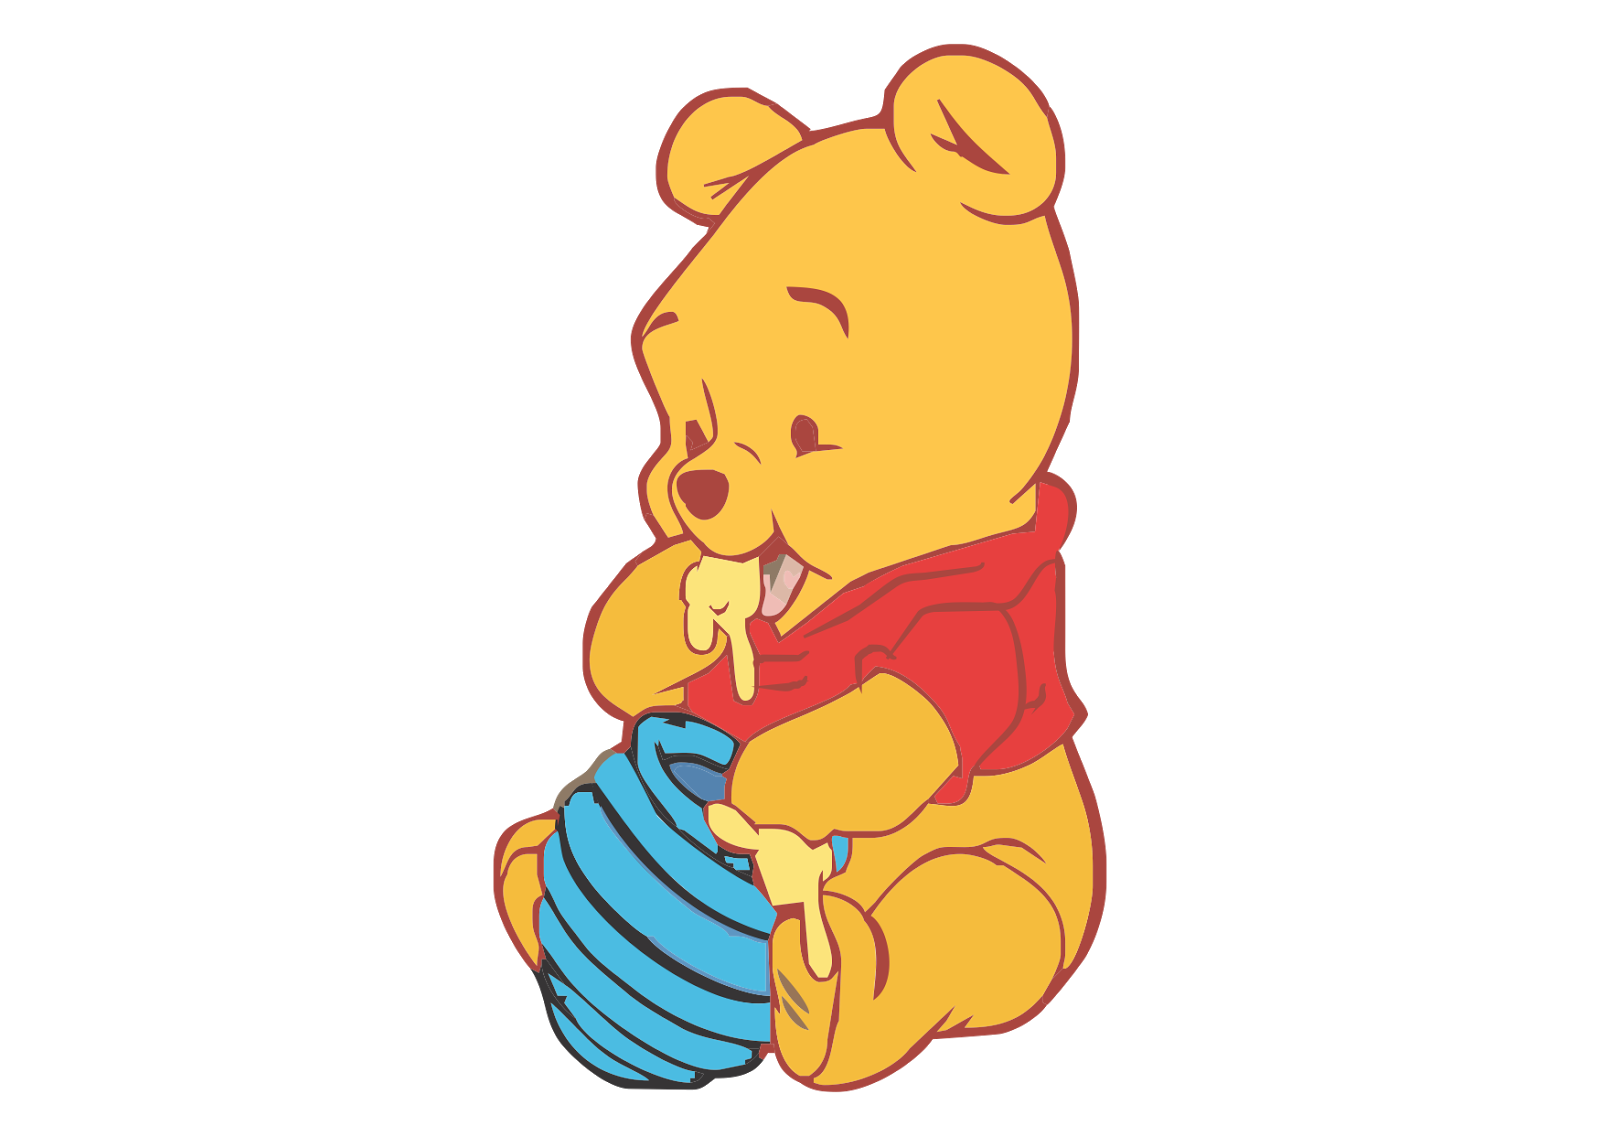 Personaggi dei cartoni animati divertenti e pagine da colorare di Winnie the Pooh per bambini